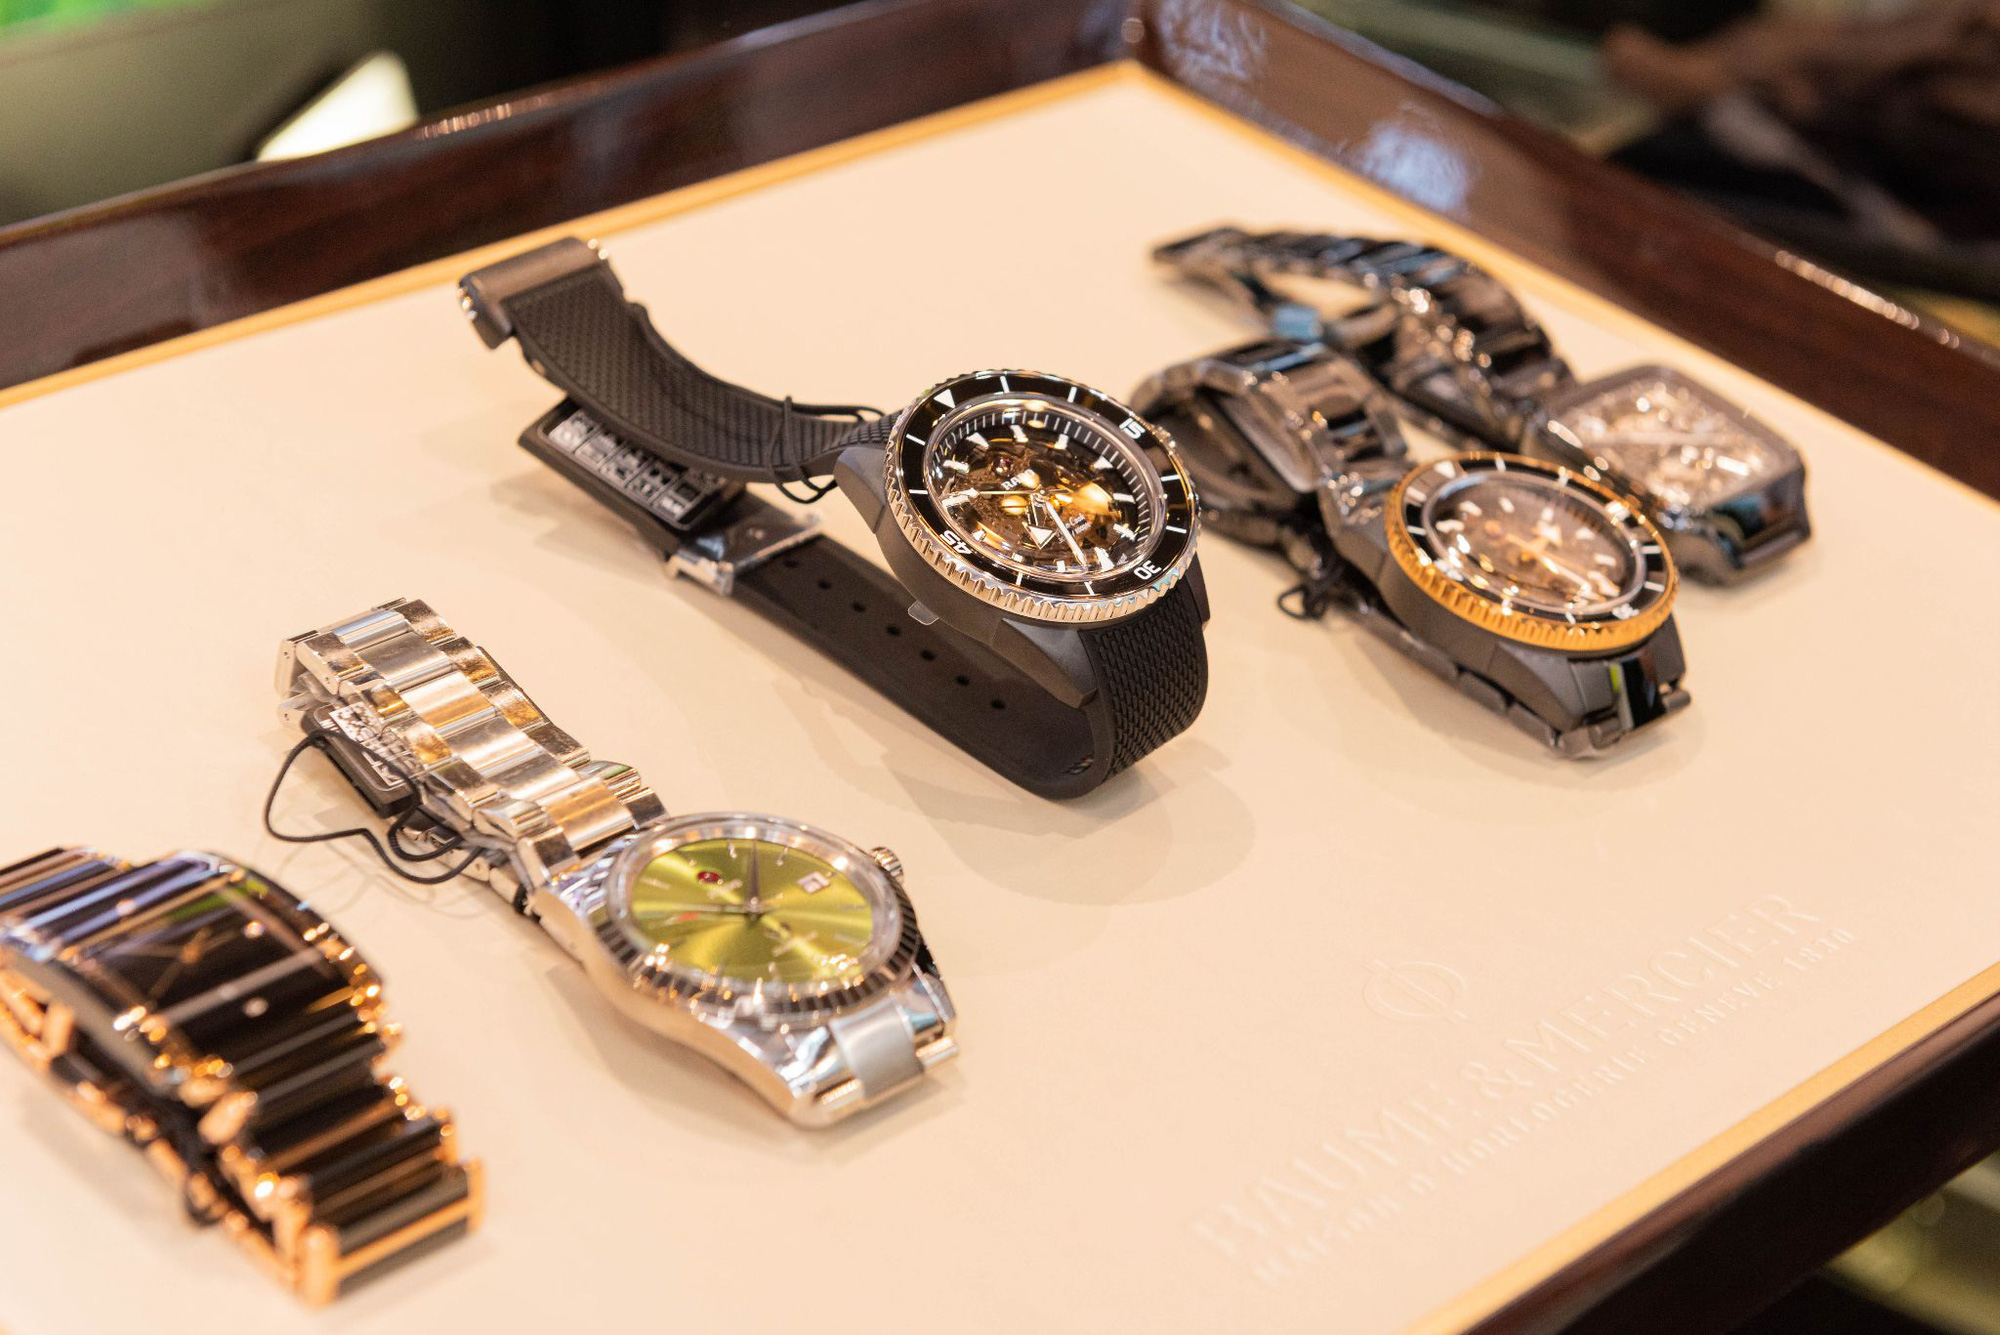 Future Time khai trương cửa hàng tại Hà Nội với nhiều mẫu đồng hồ sang trọng, mới lạ - Ảnh 3.